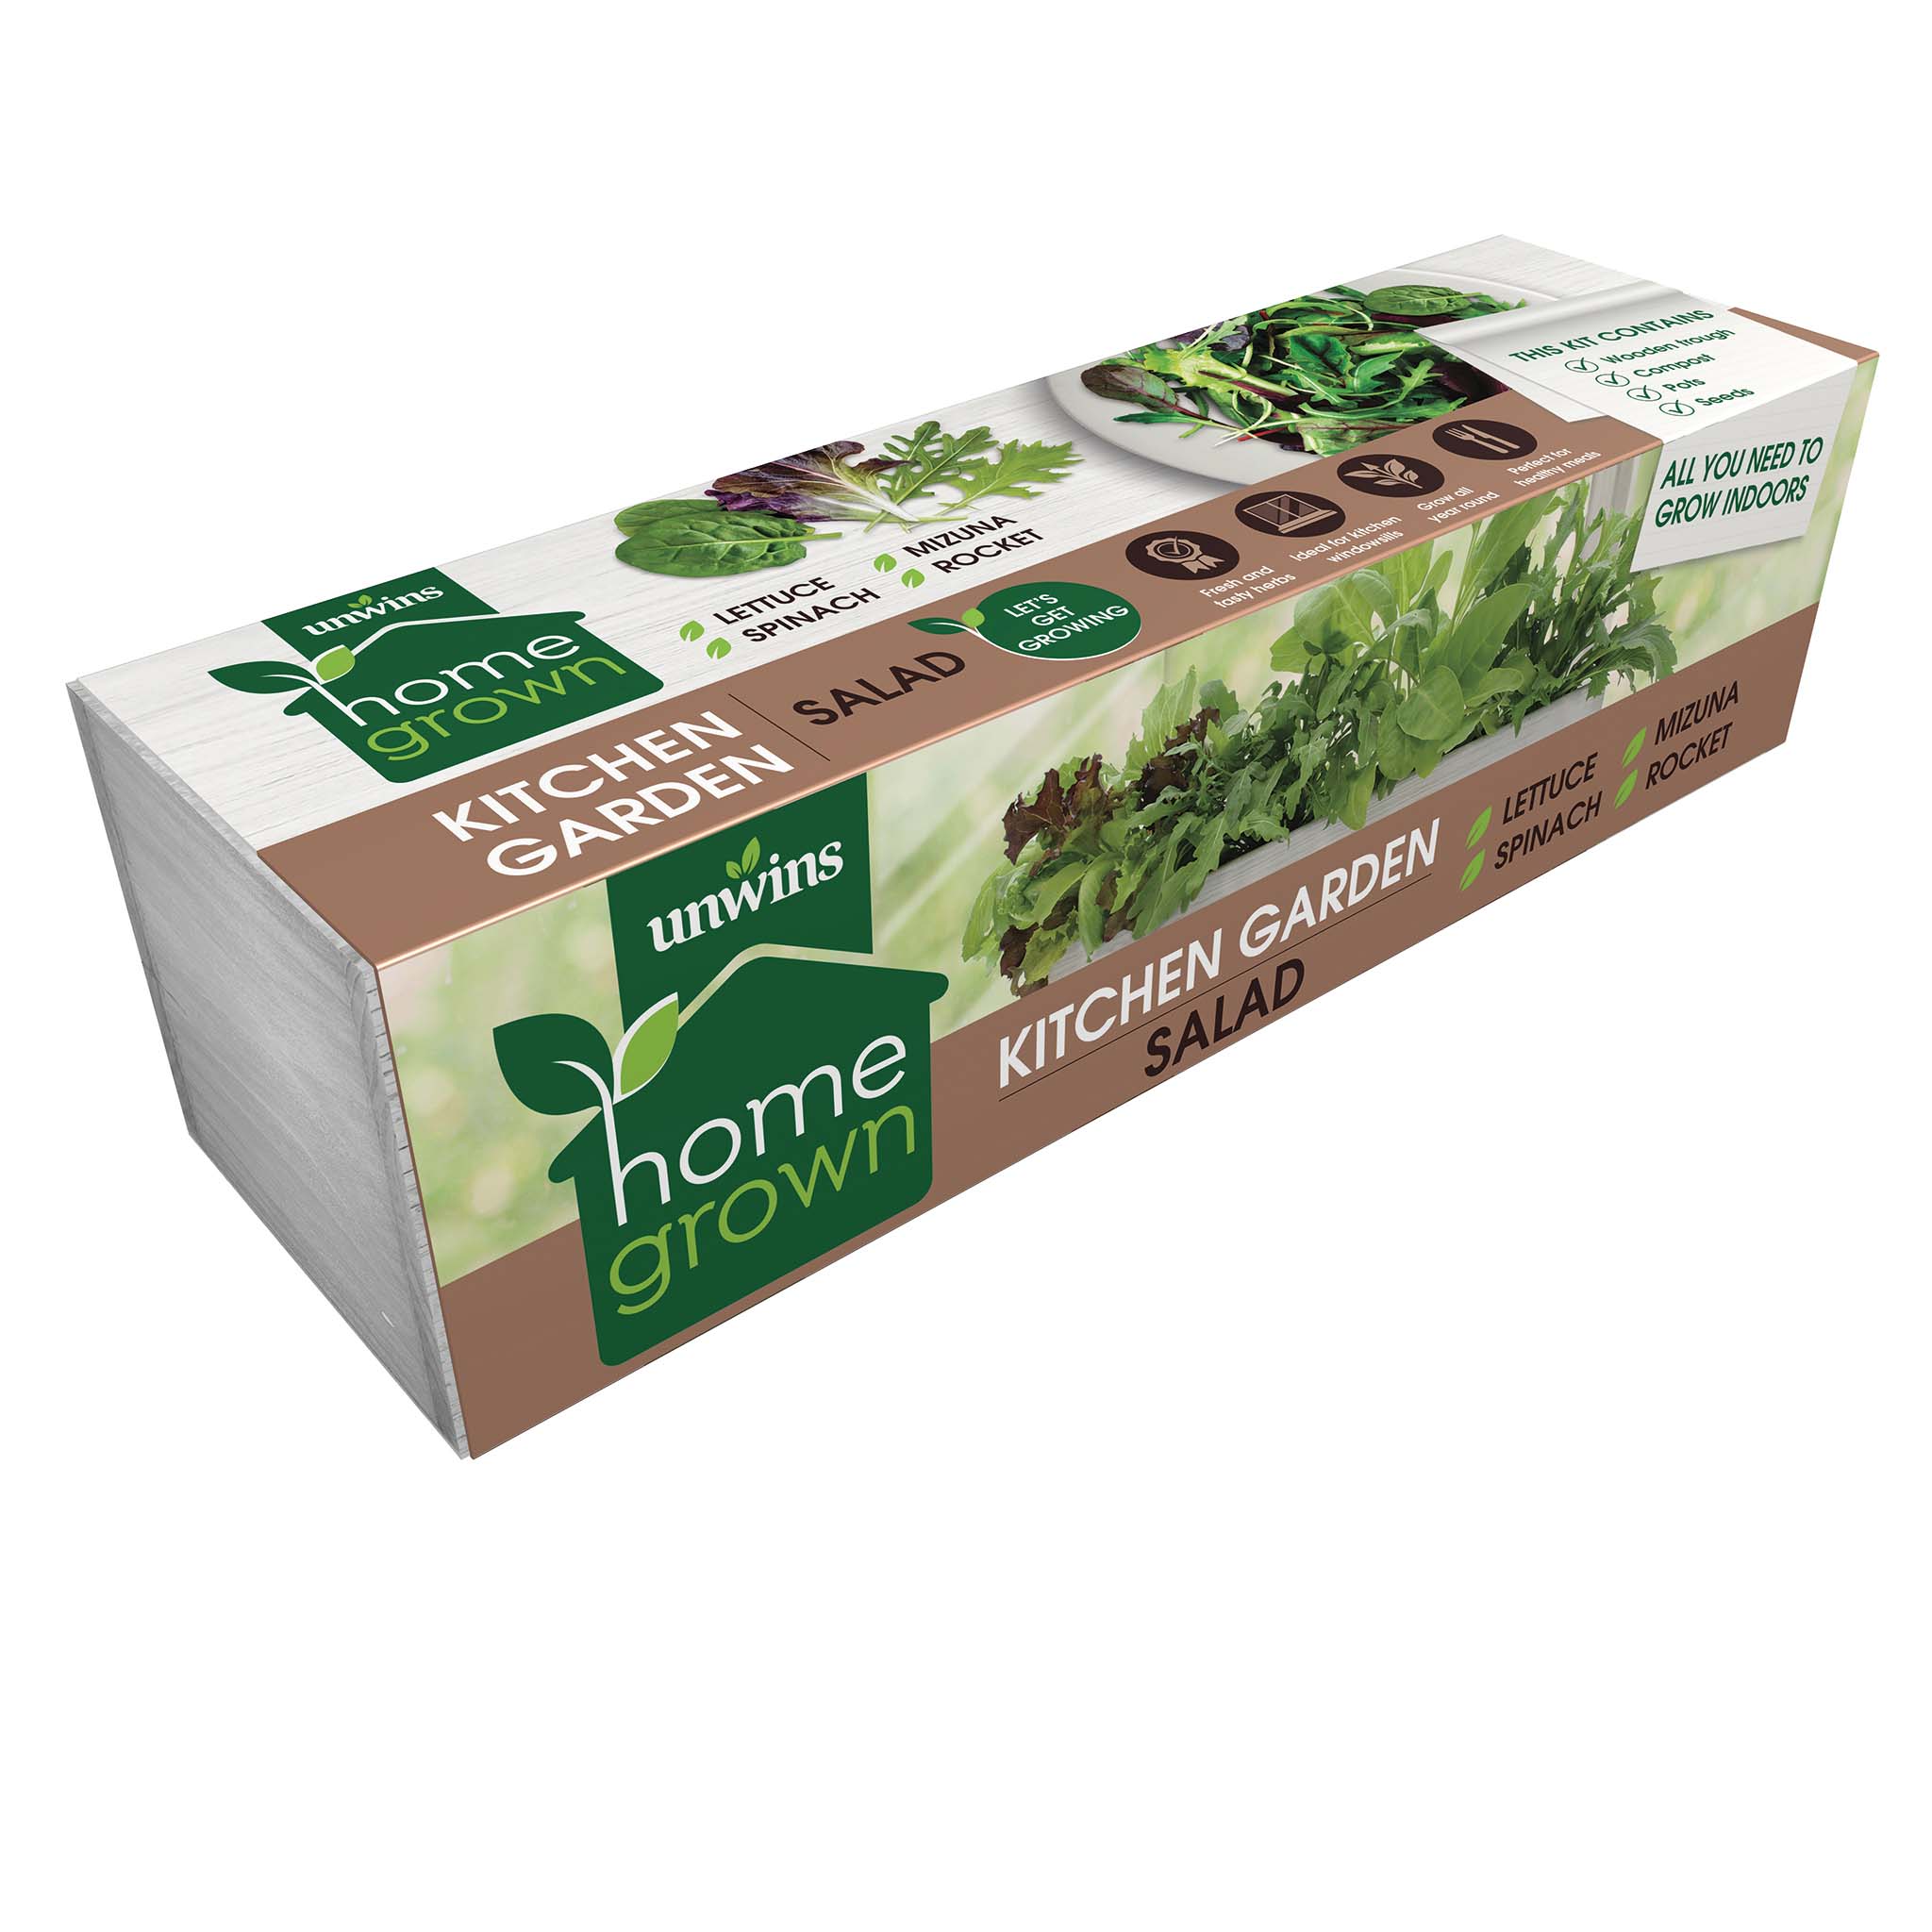 Unwins Homegrown Salad Kitchen Garden Kit